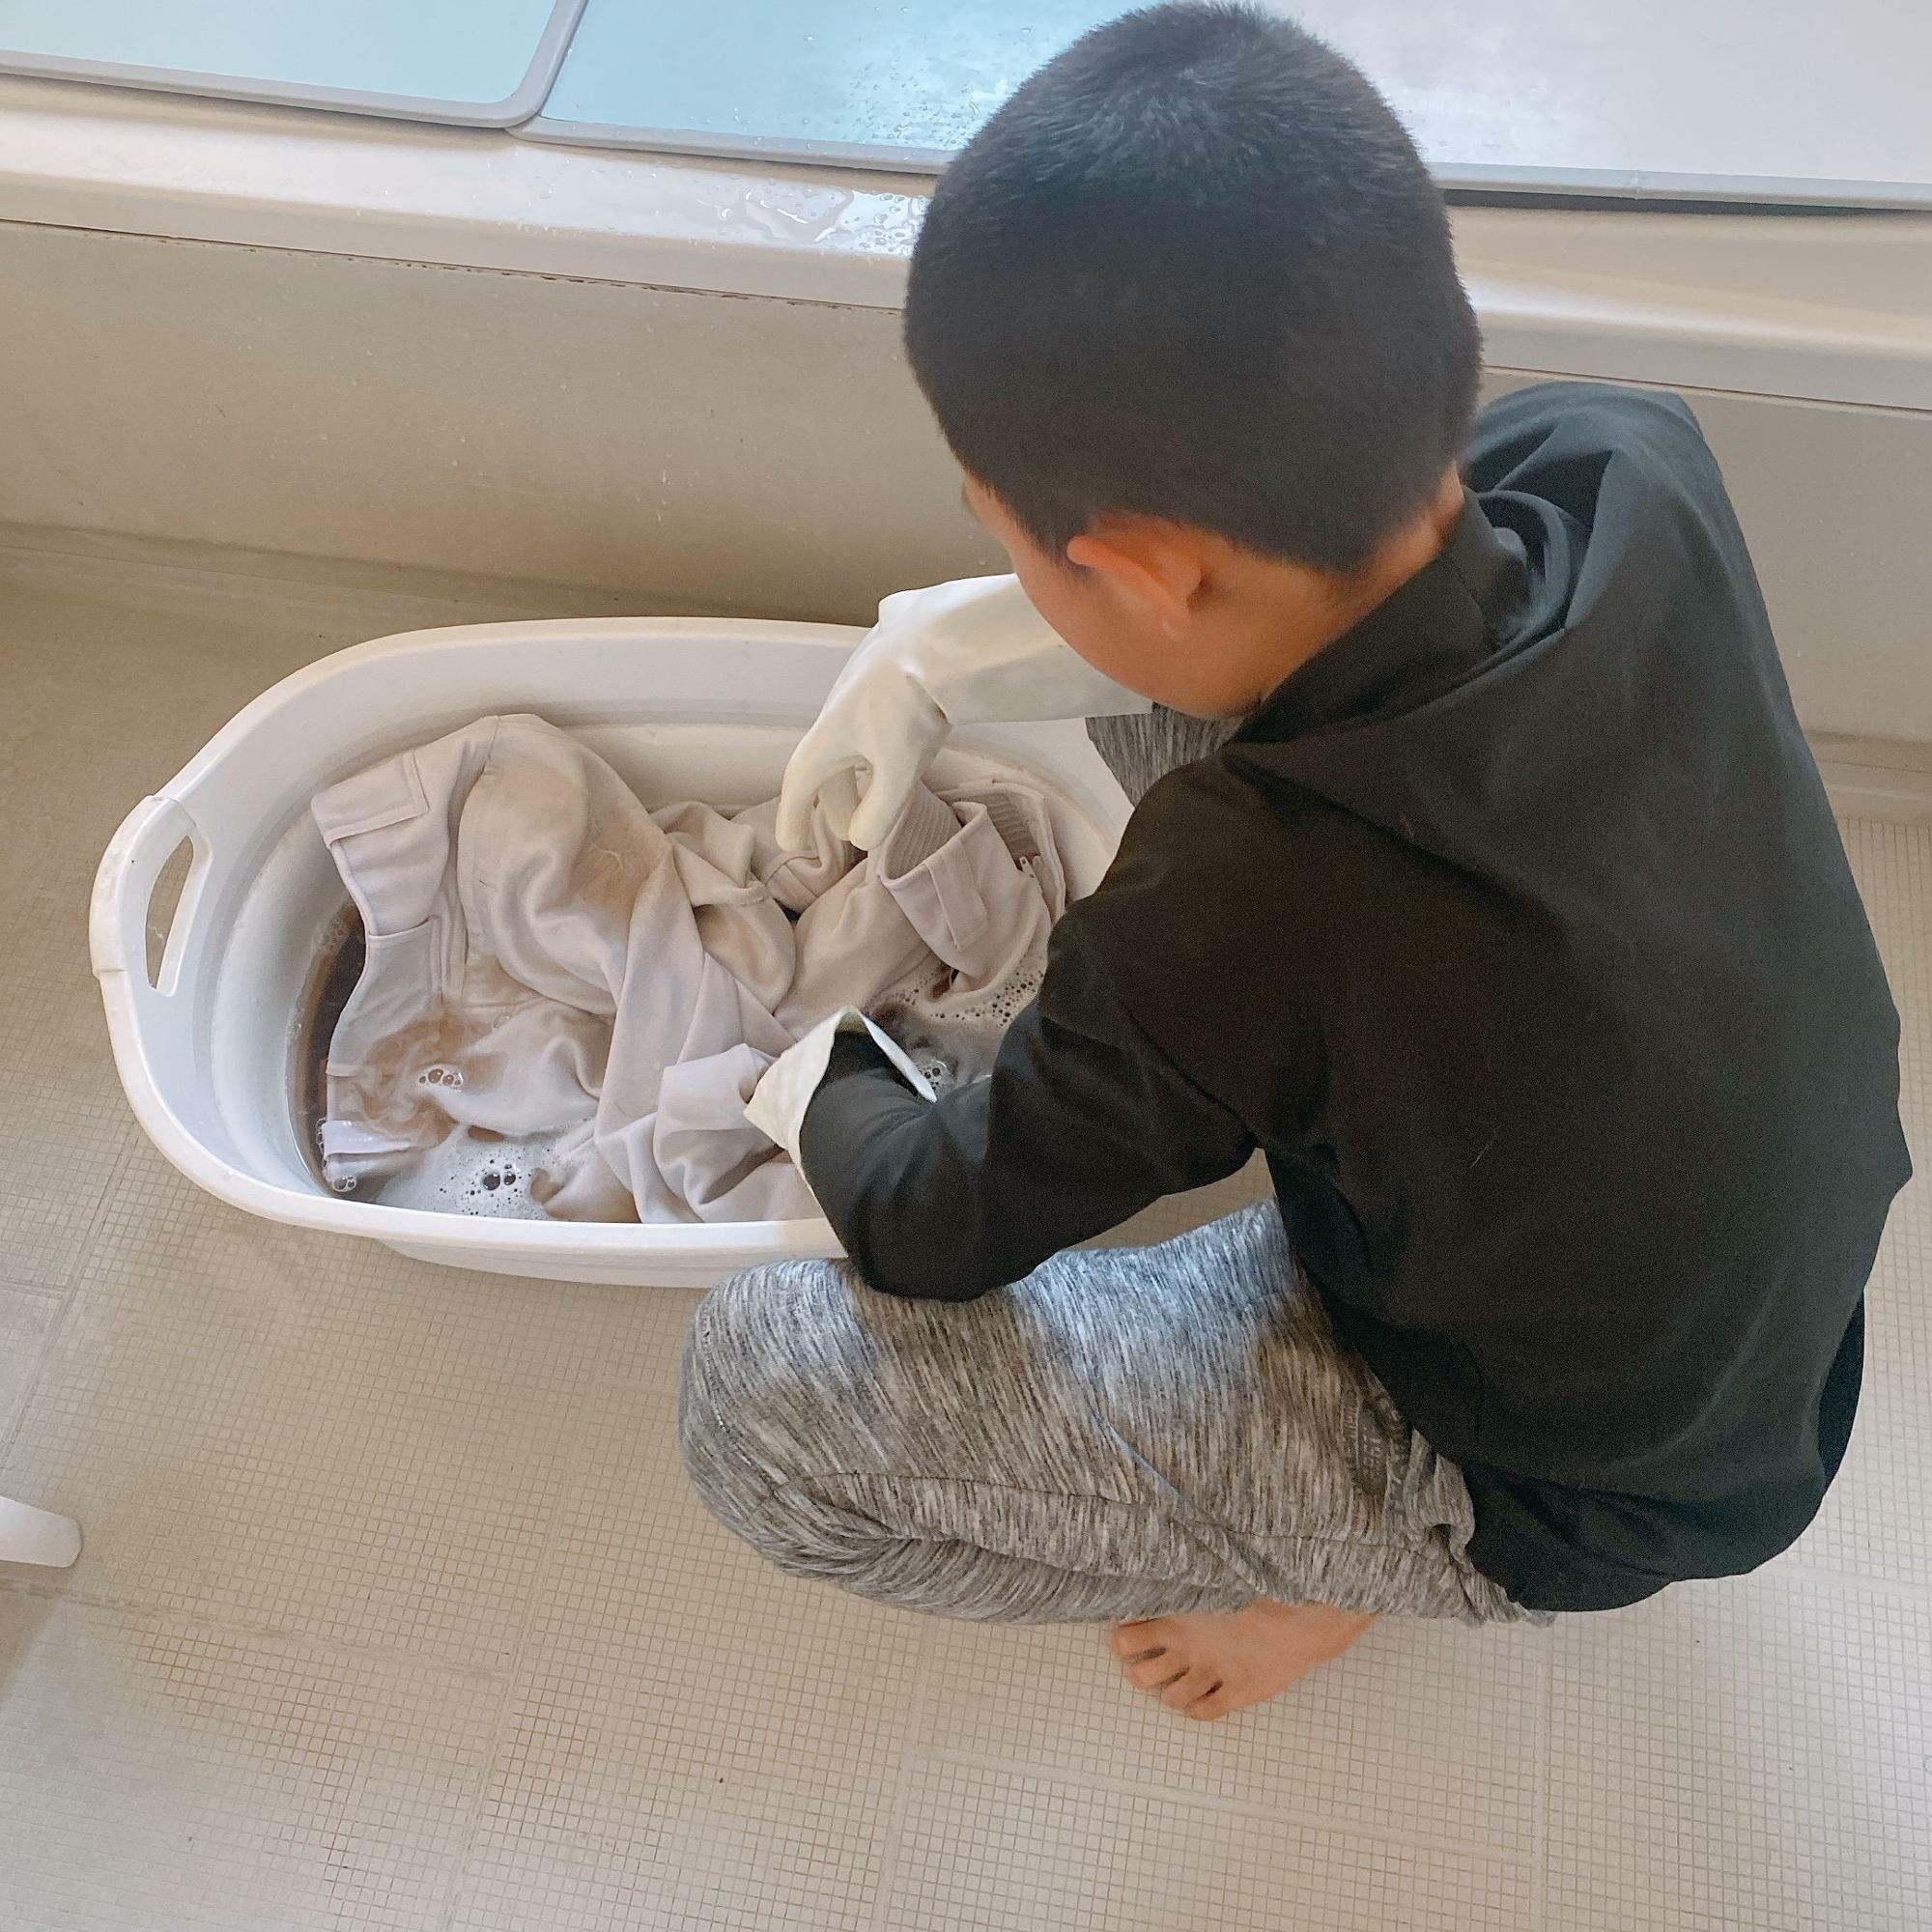 時には、子どもたちに自分で洗ってもらいます